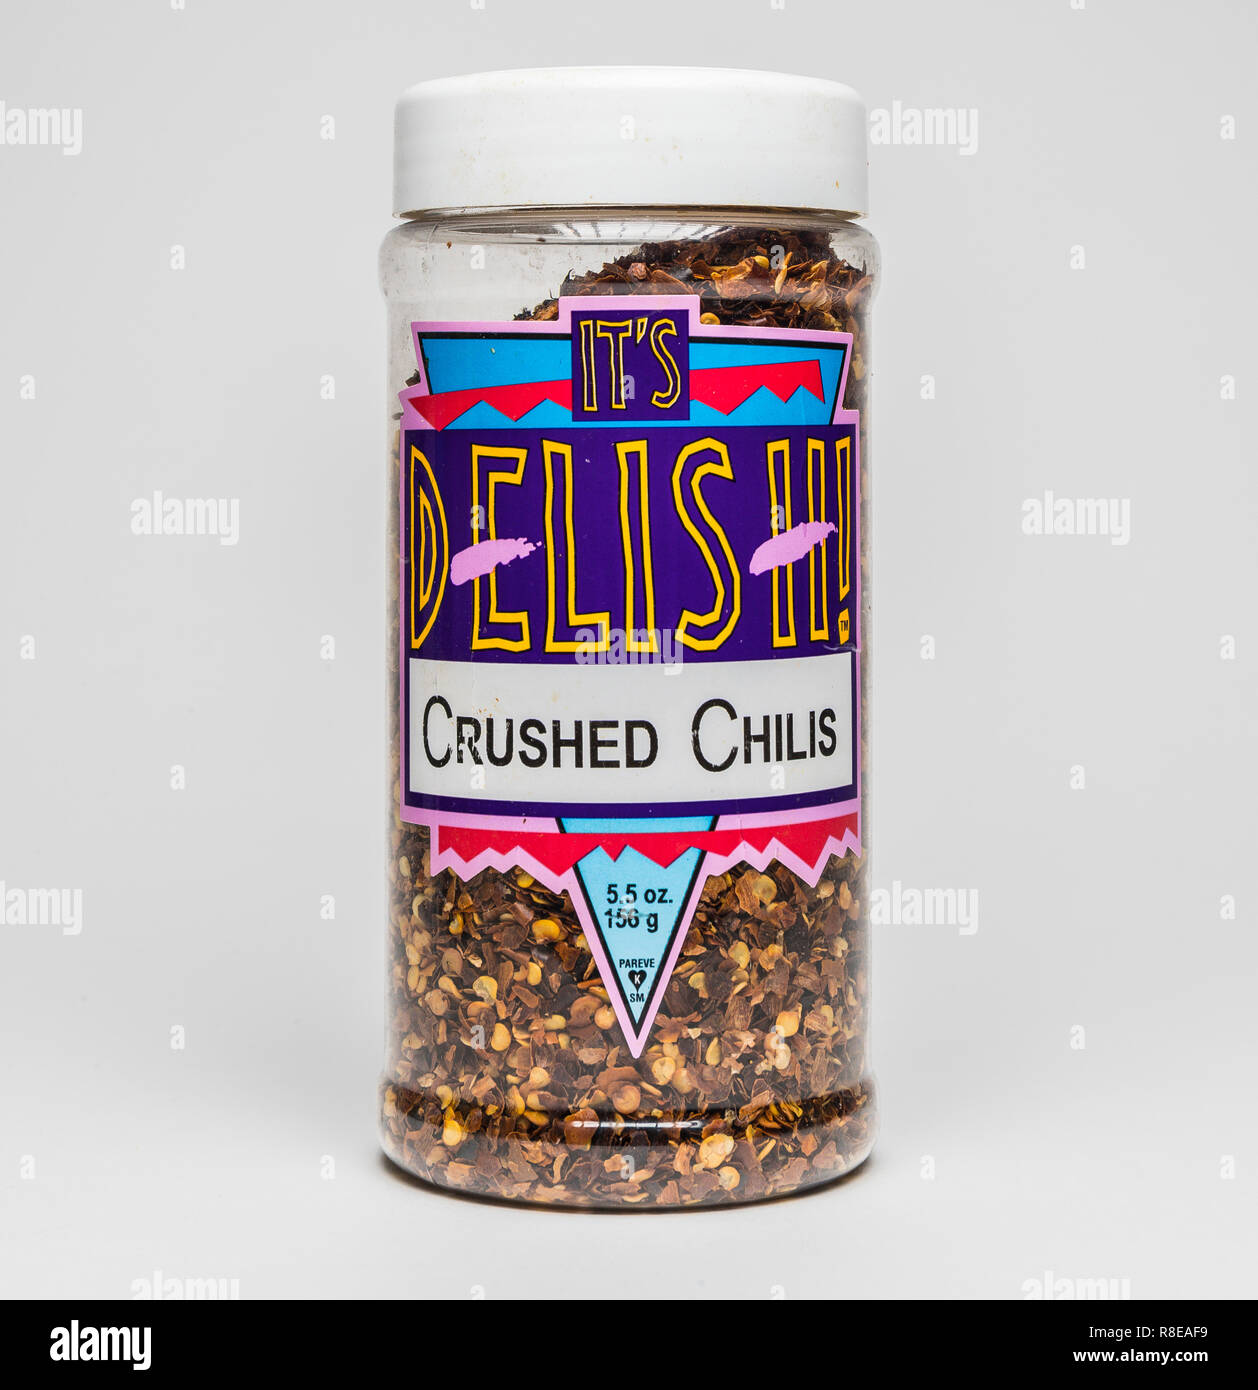 it's delish! crushed chilis Stock Photo